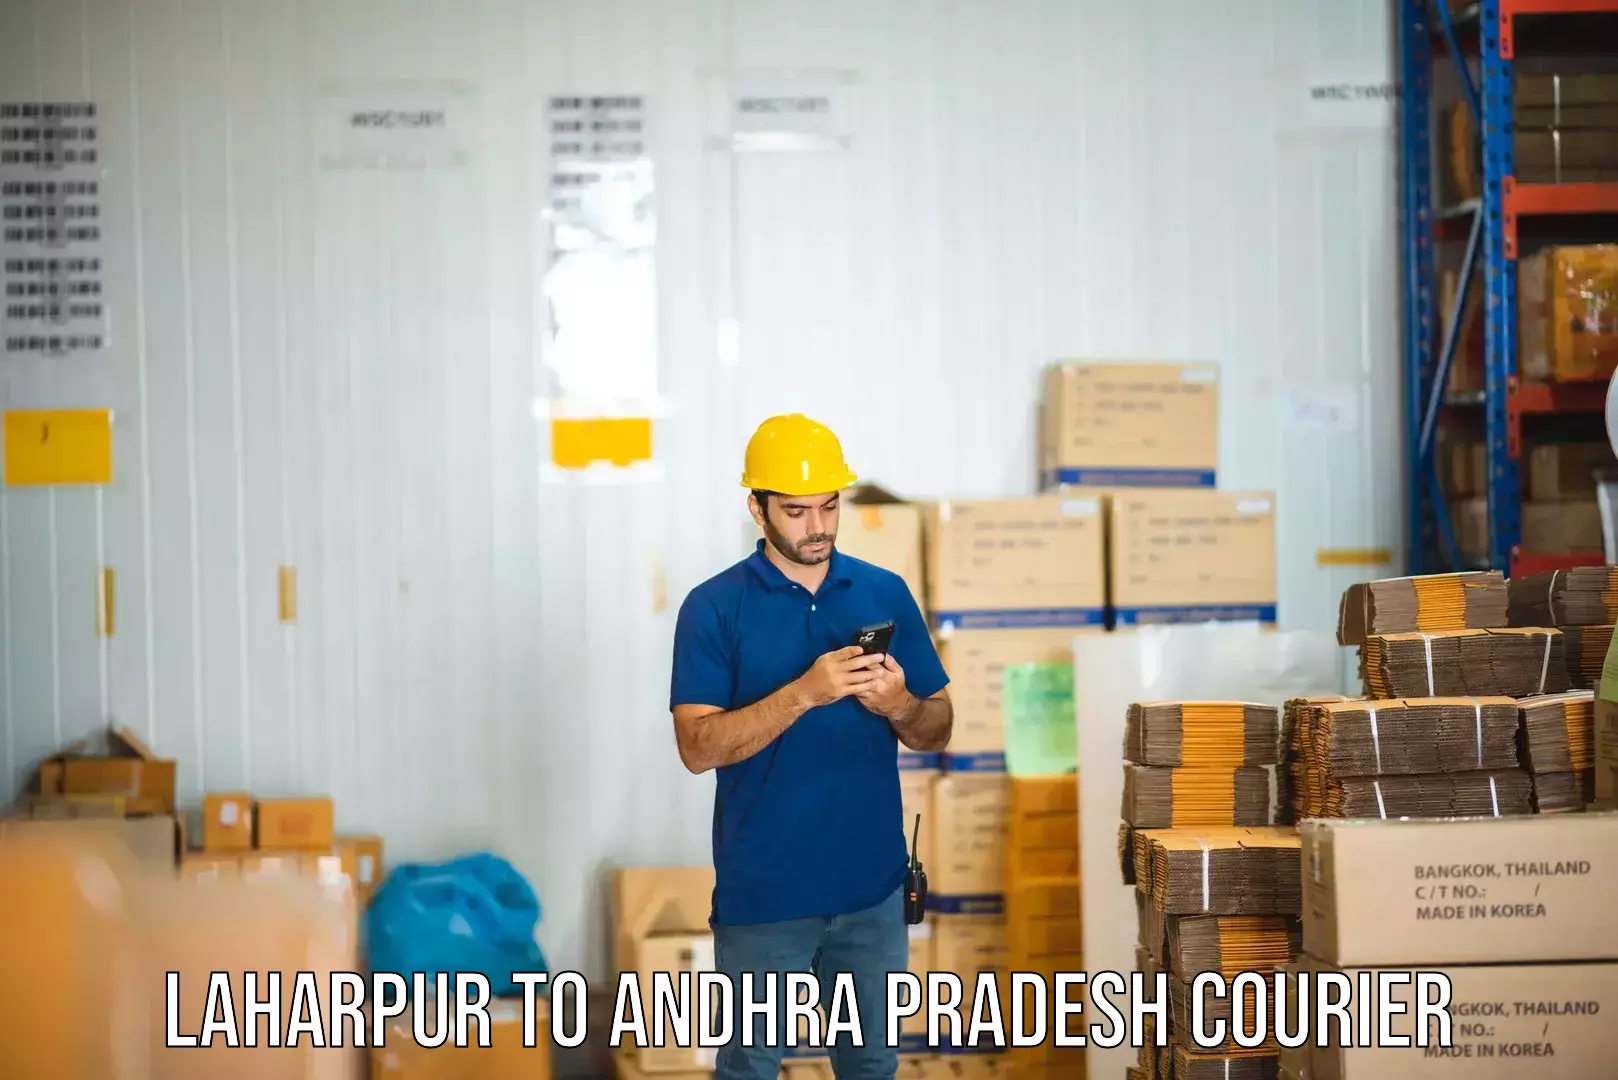 Multi-service courier options Laharpur to Andhra Pradesh